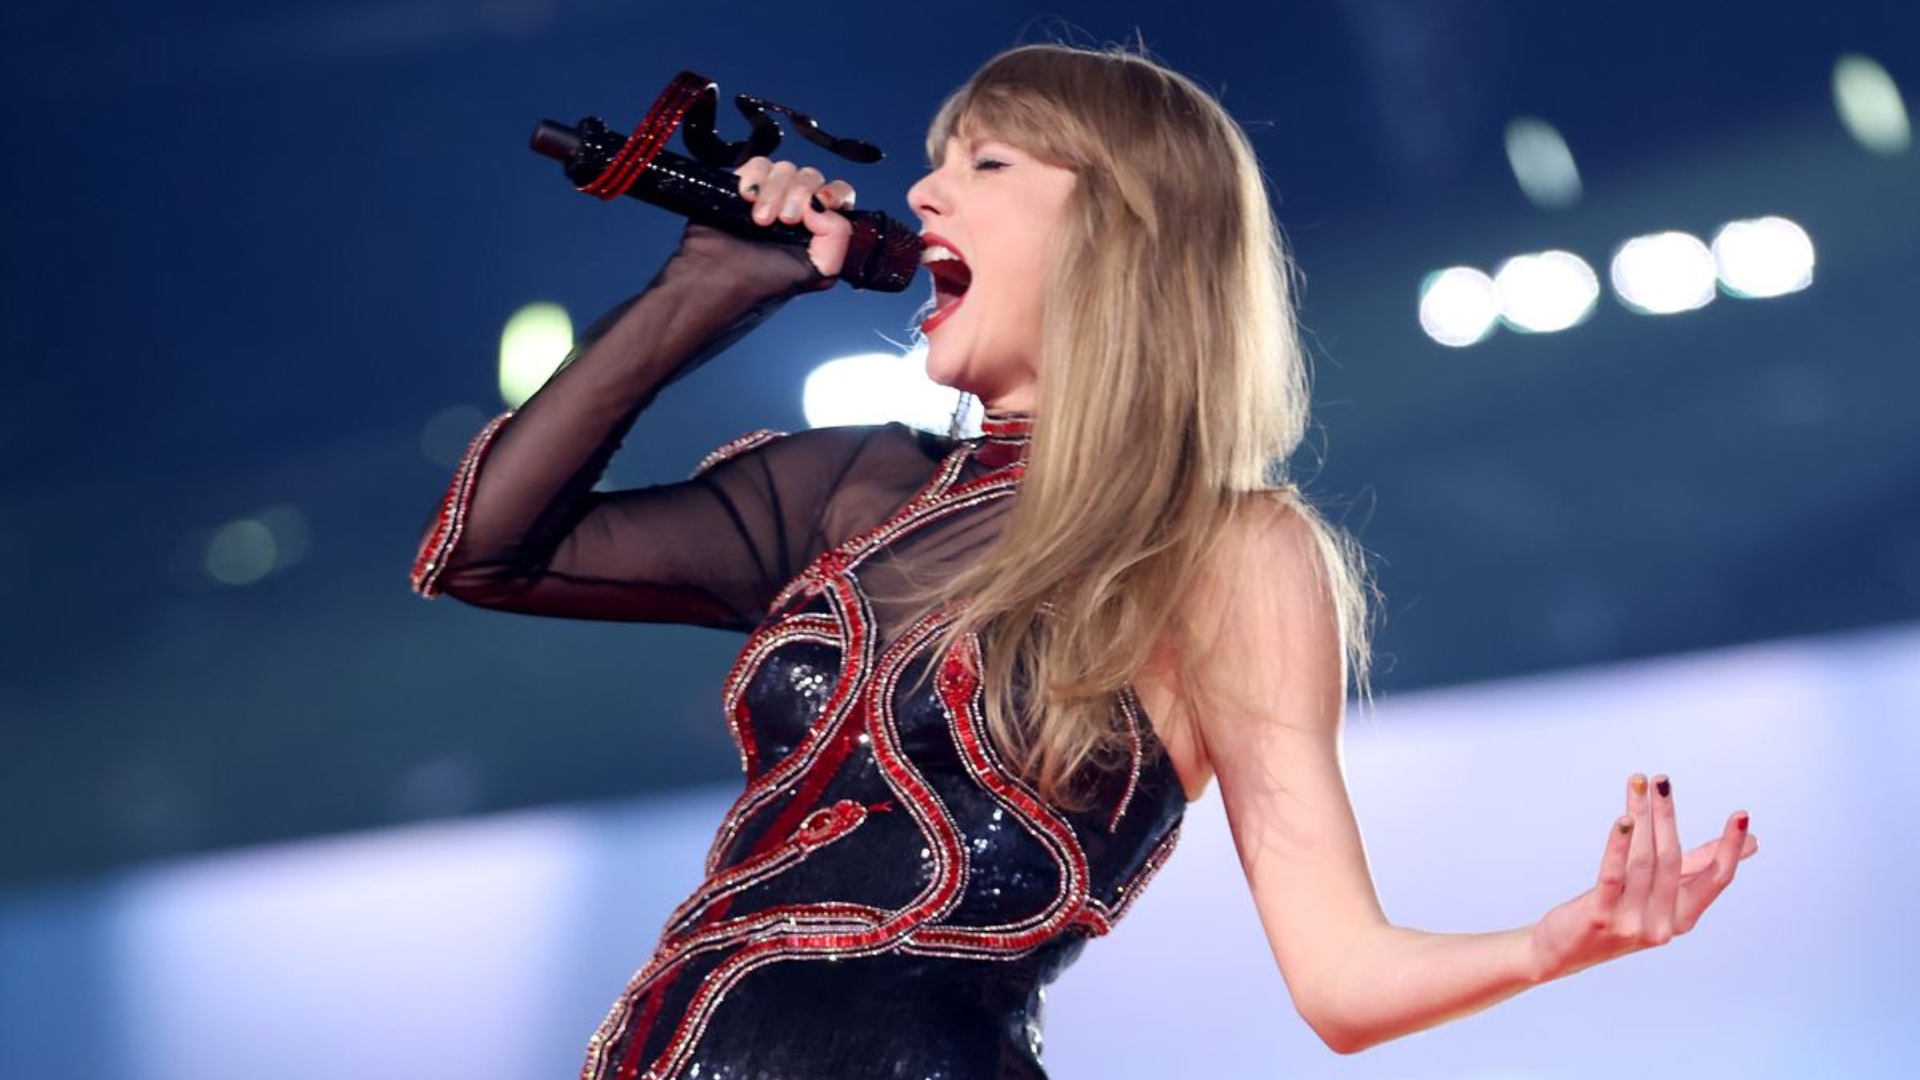 The Eras Tour: Show de Taylor Swift no Rio de Janeiro ficou marcado por desmaios e óbito de fãs